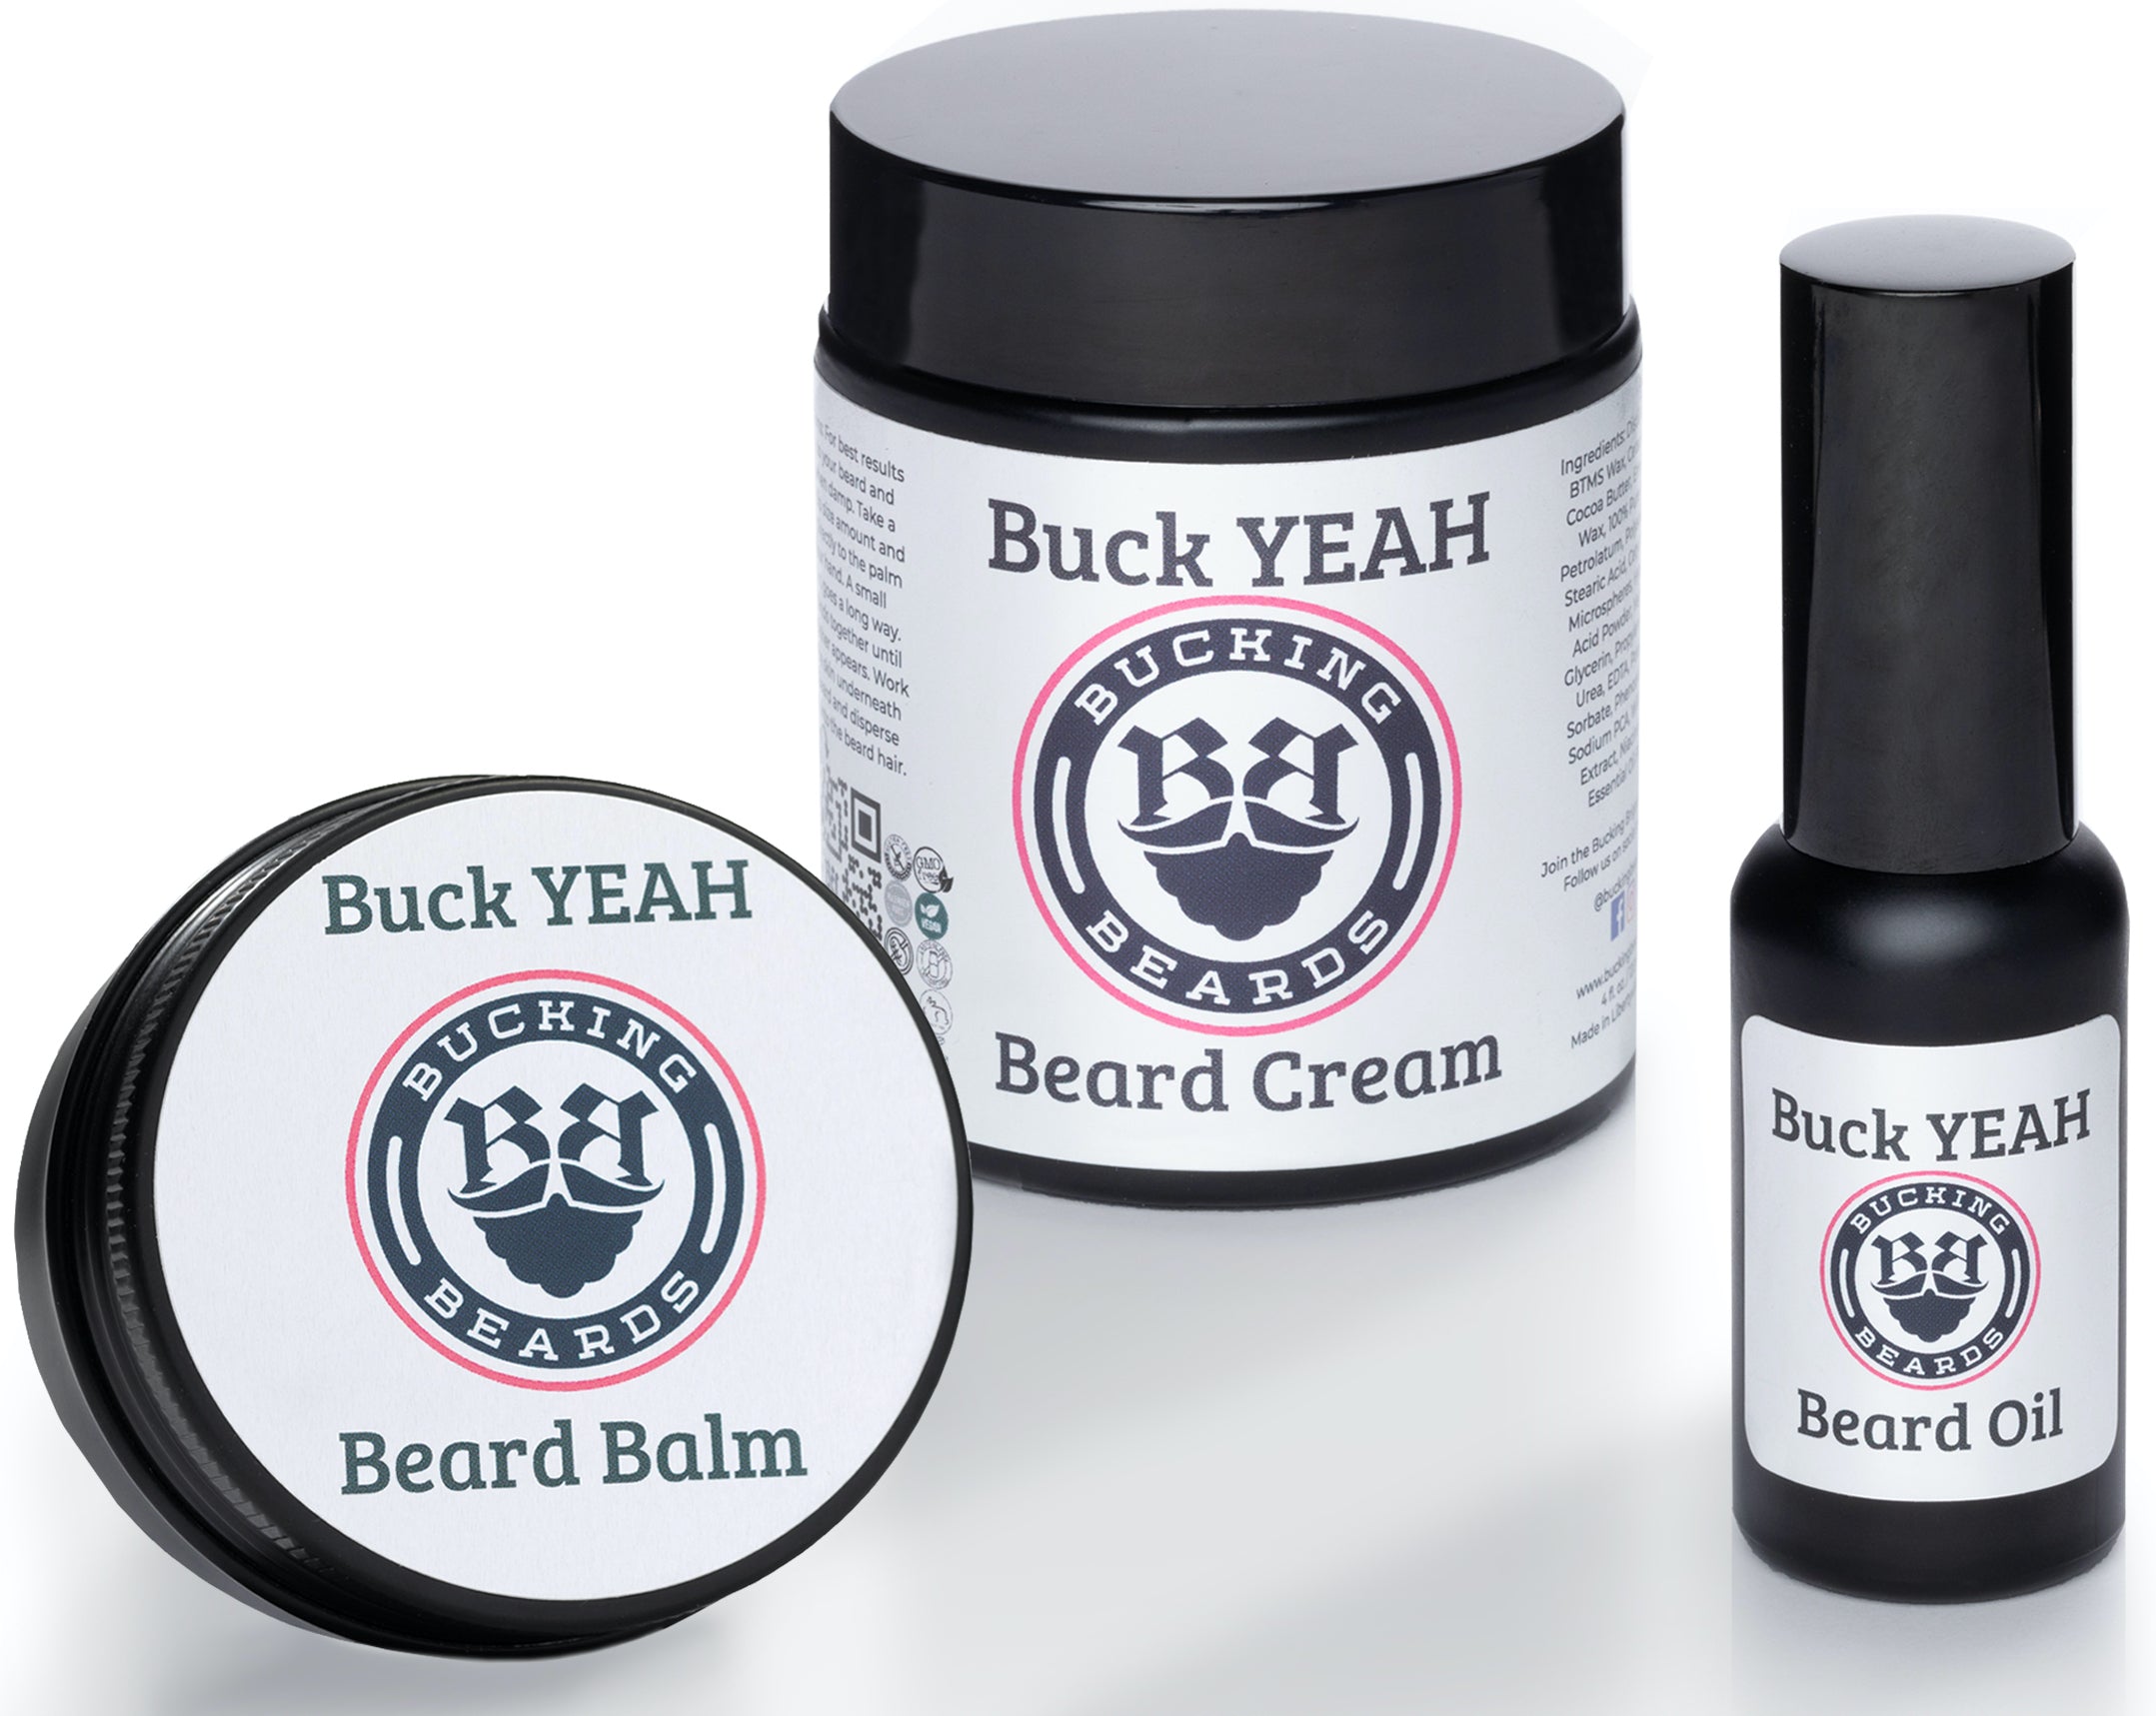 Buck YEAH - Beard Bundle